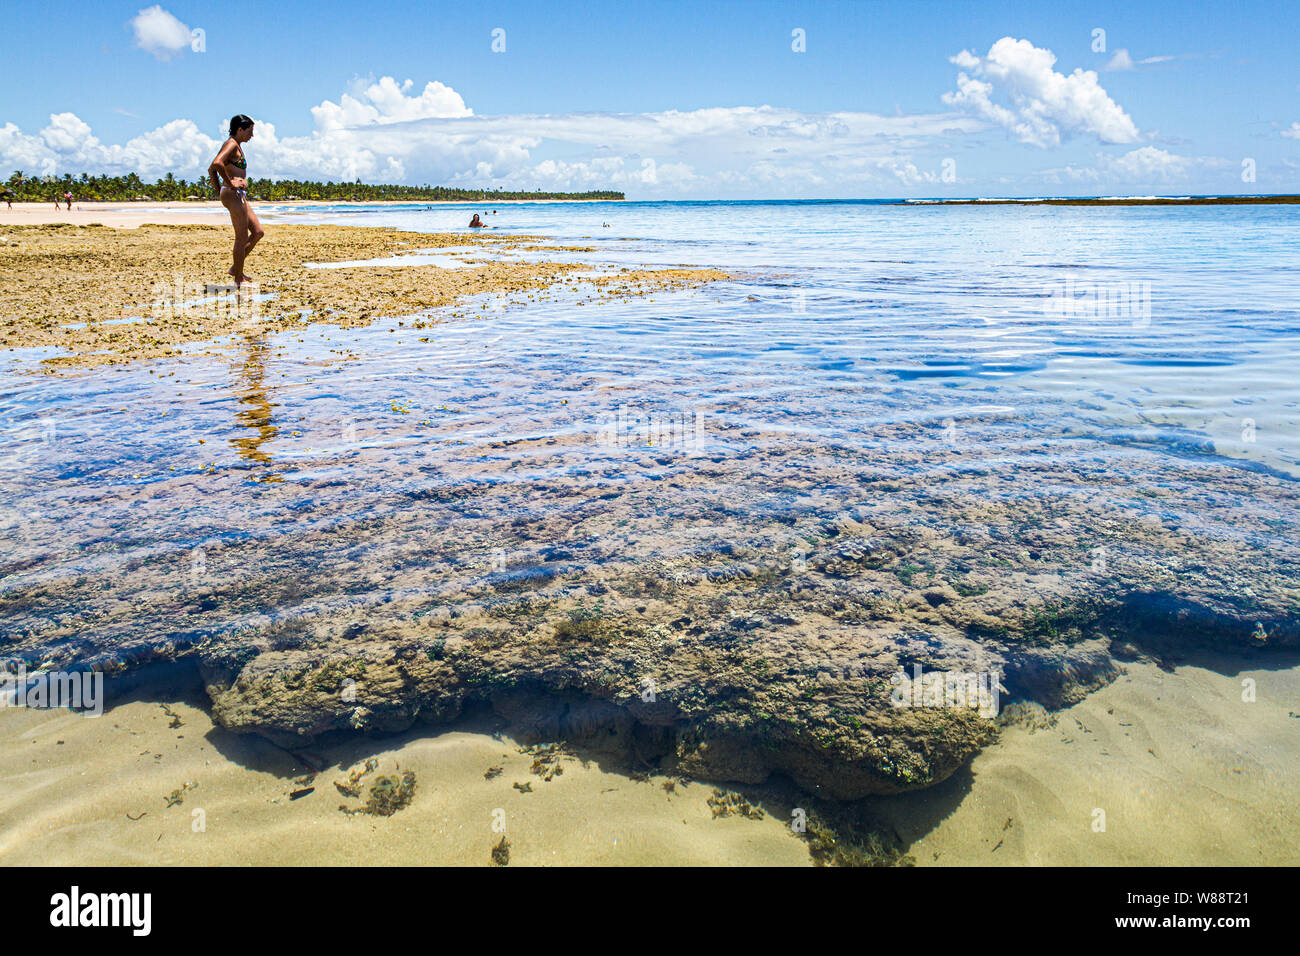 Los arrecifes de coral en la playa de Taipu de Fora, en la Península de Marau. Marau, Bahia, Brasil. Foto de stock